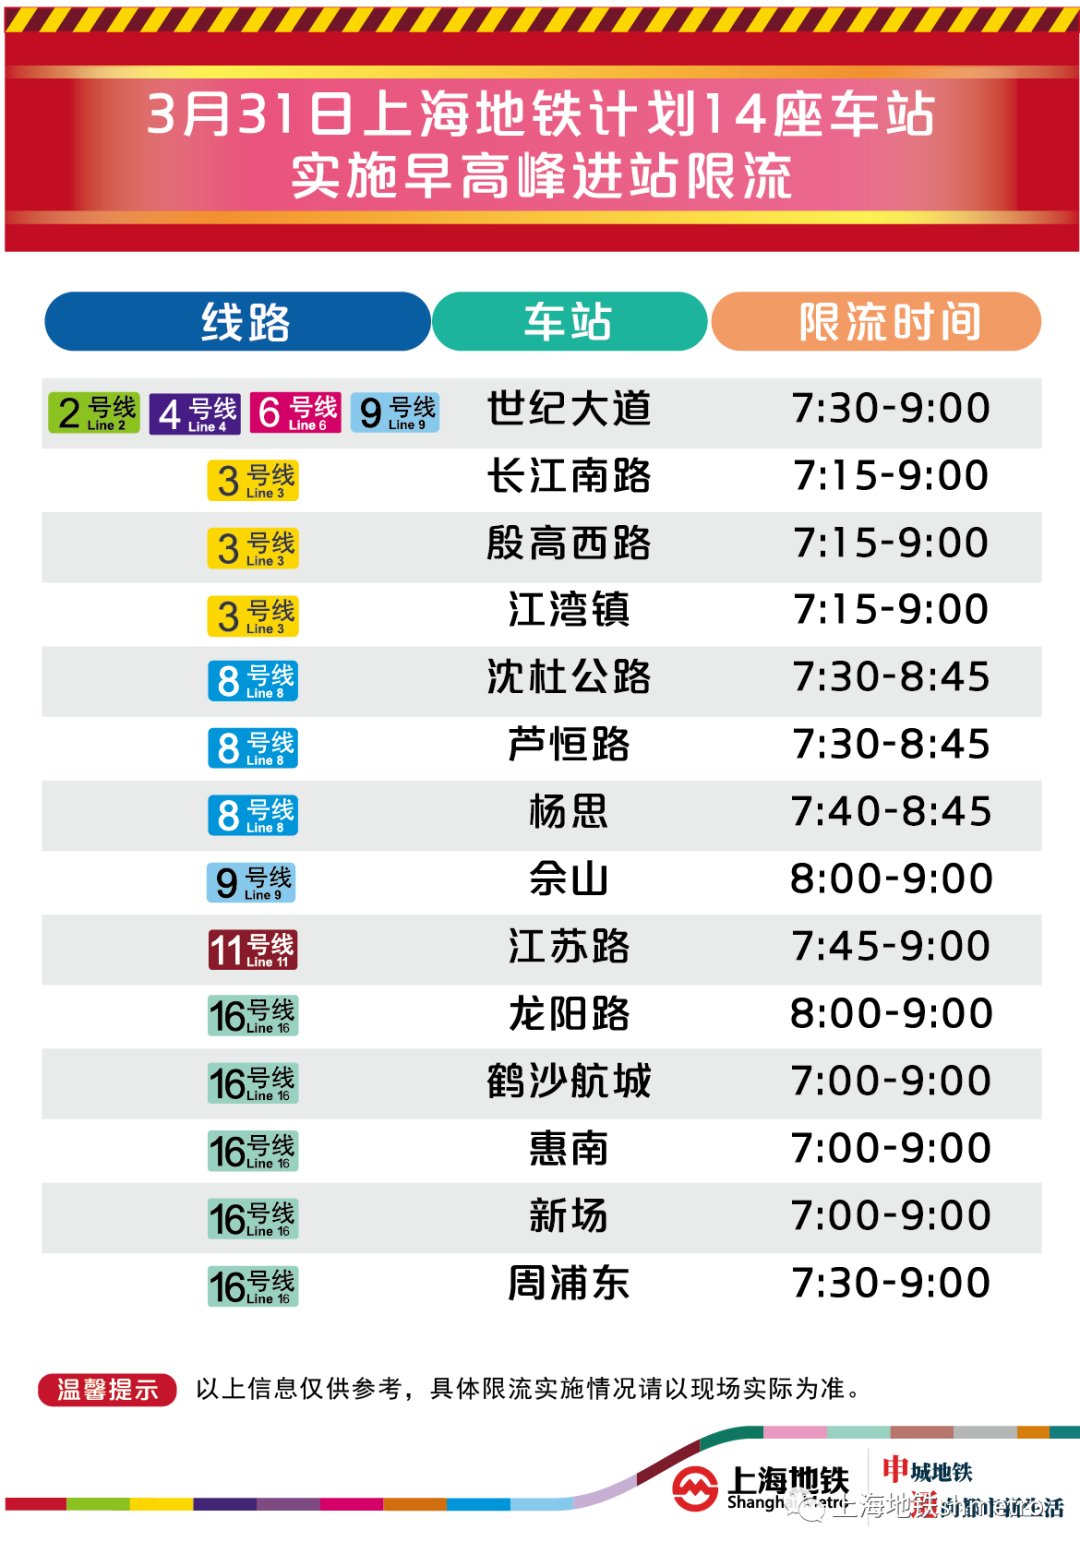 16号线大站车 运行时间图片